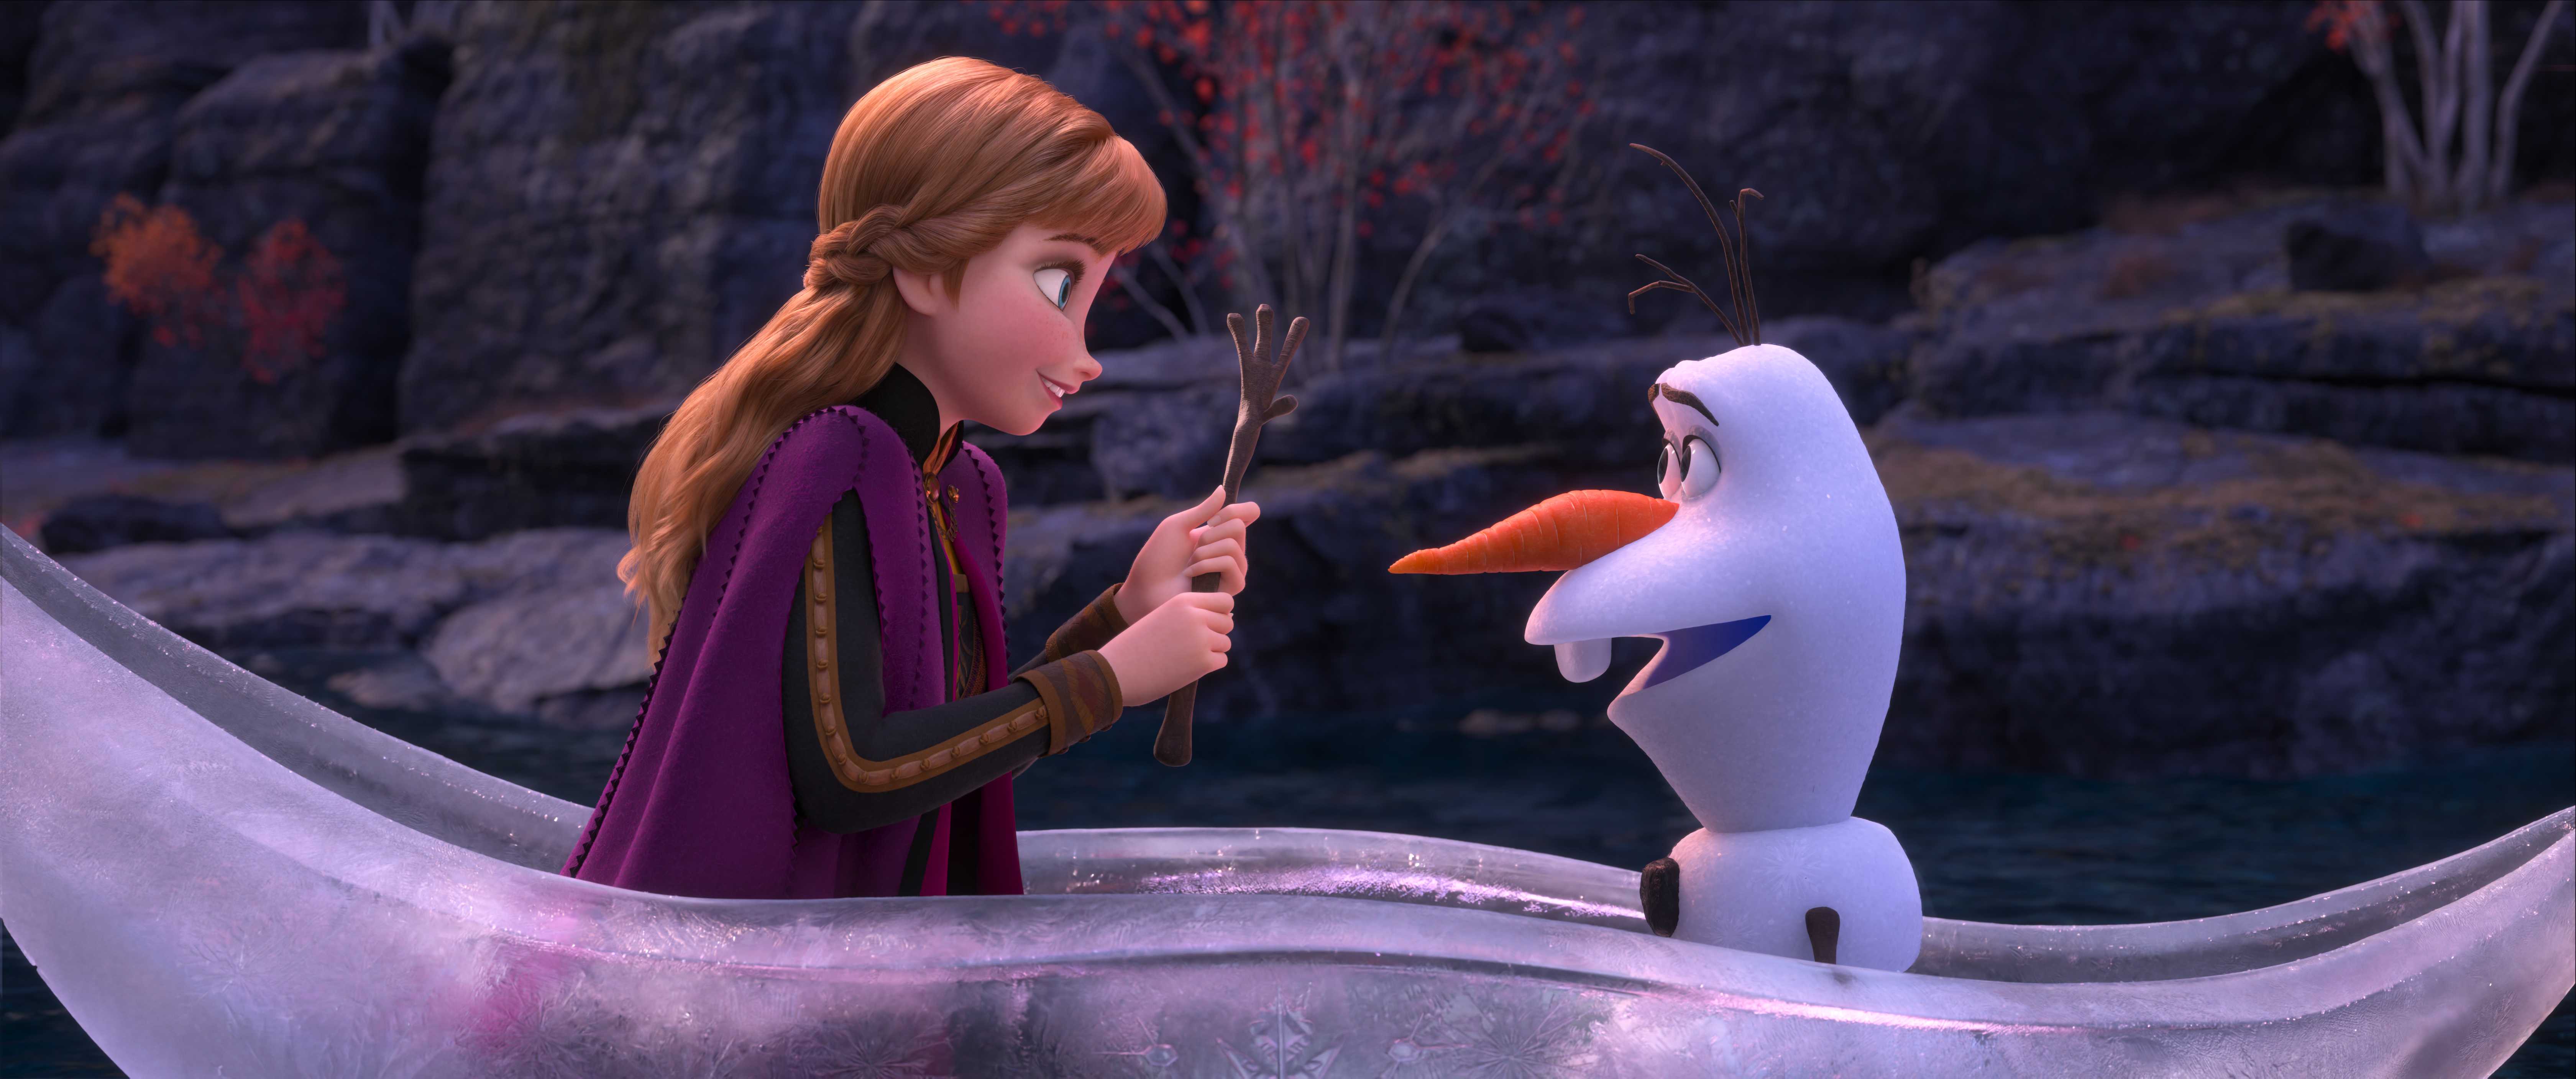 《冰雪奇缘2》首波影评:公主走出城堡拯救世界,雪宝成笑点担当